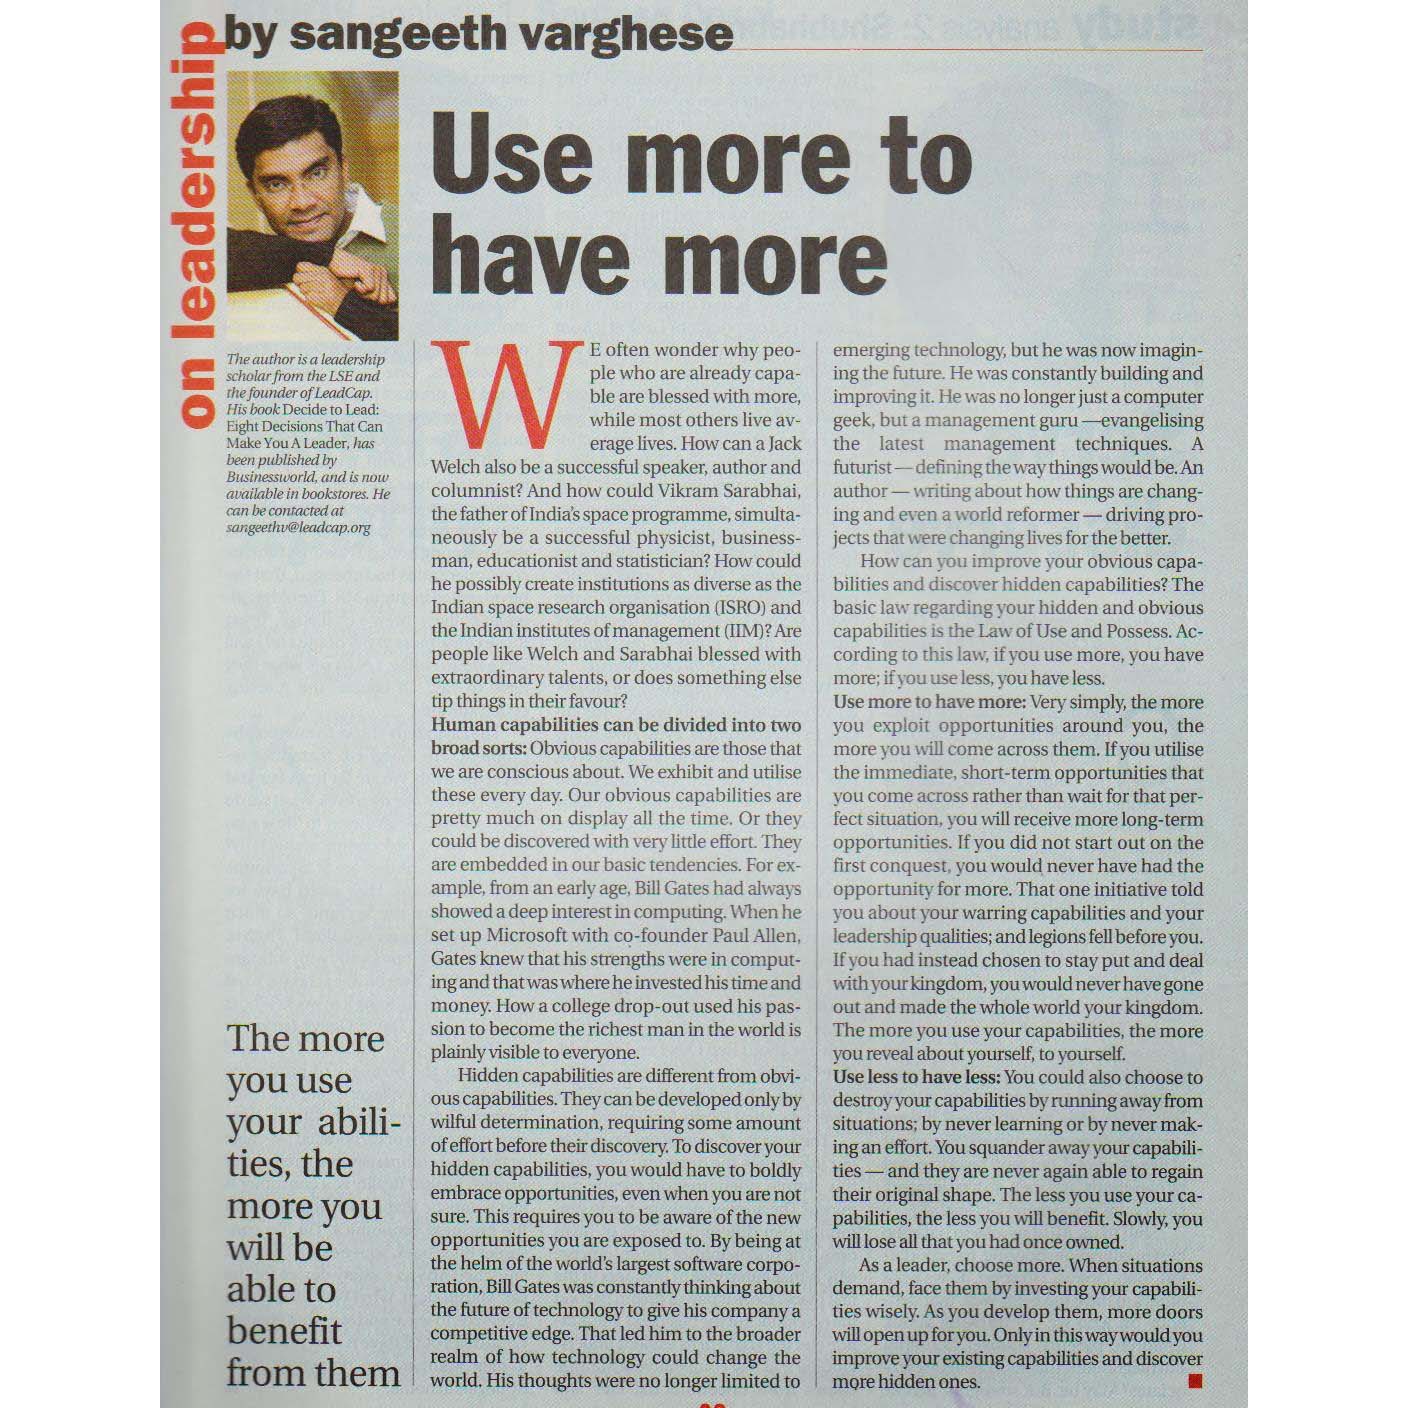 BusinessWorld 4 June 2007